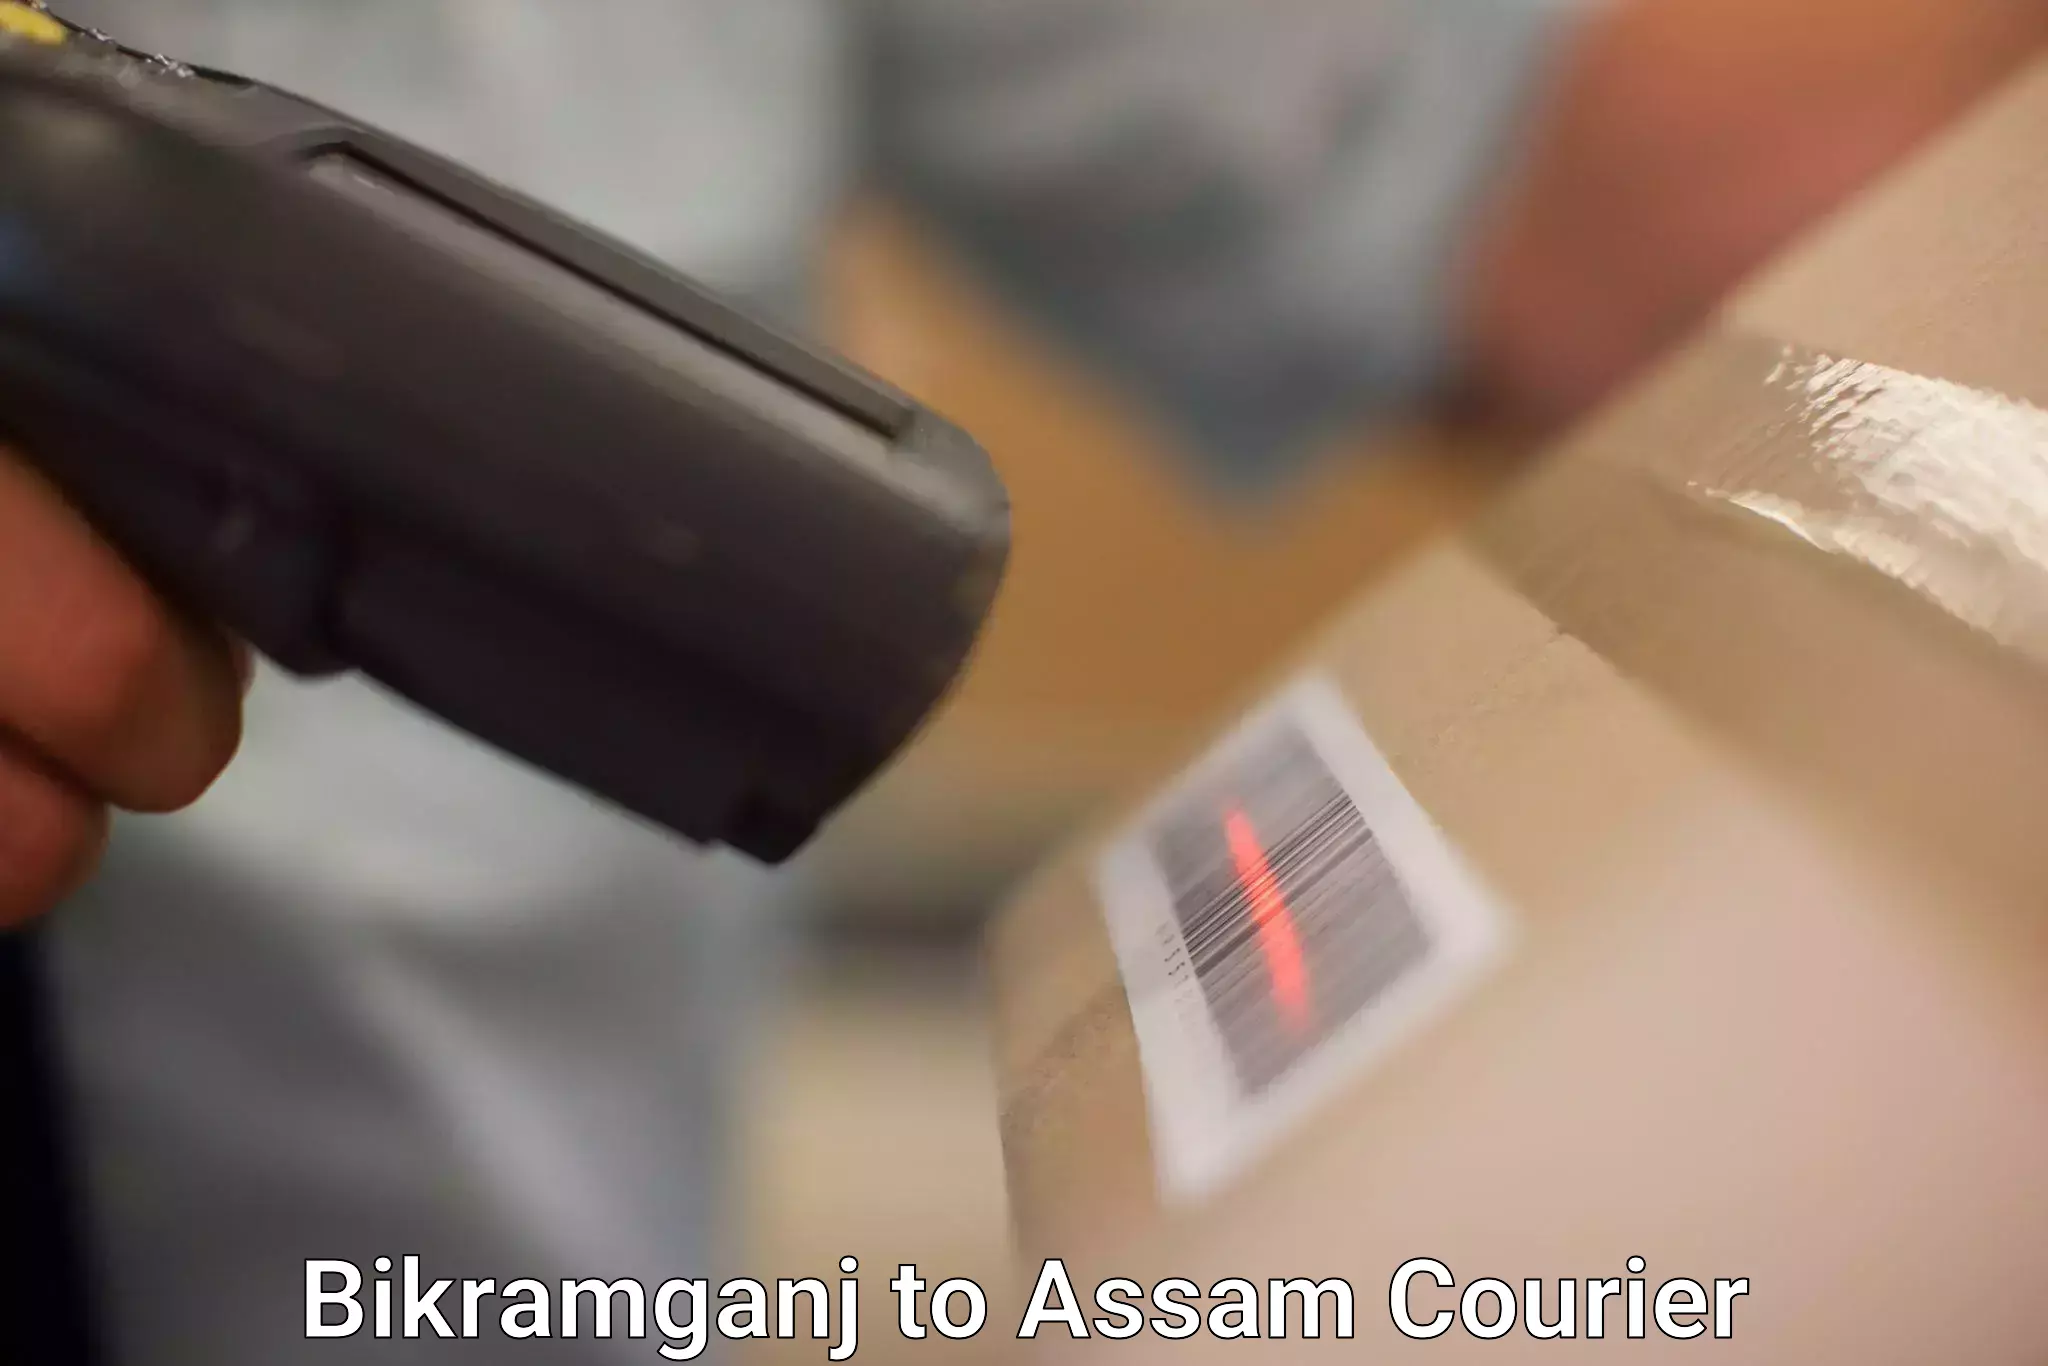 International courier networks Bikramganj to Assam